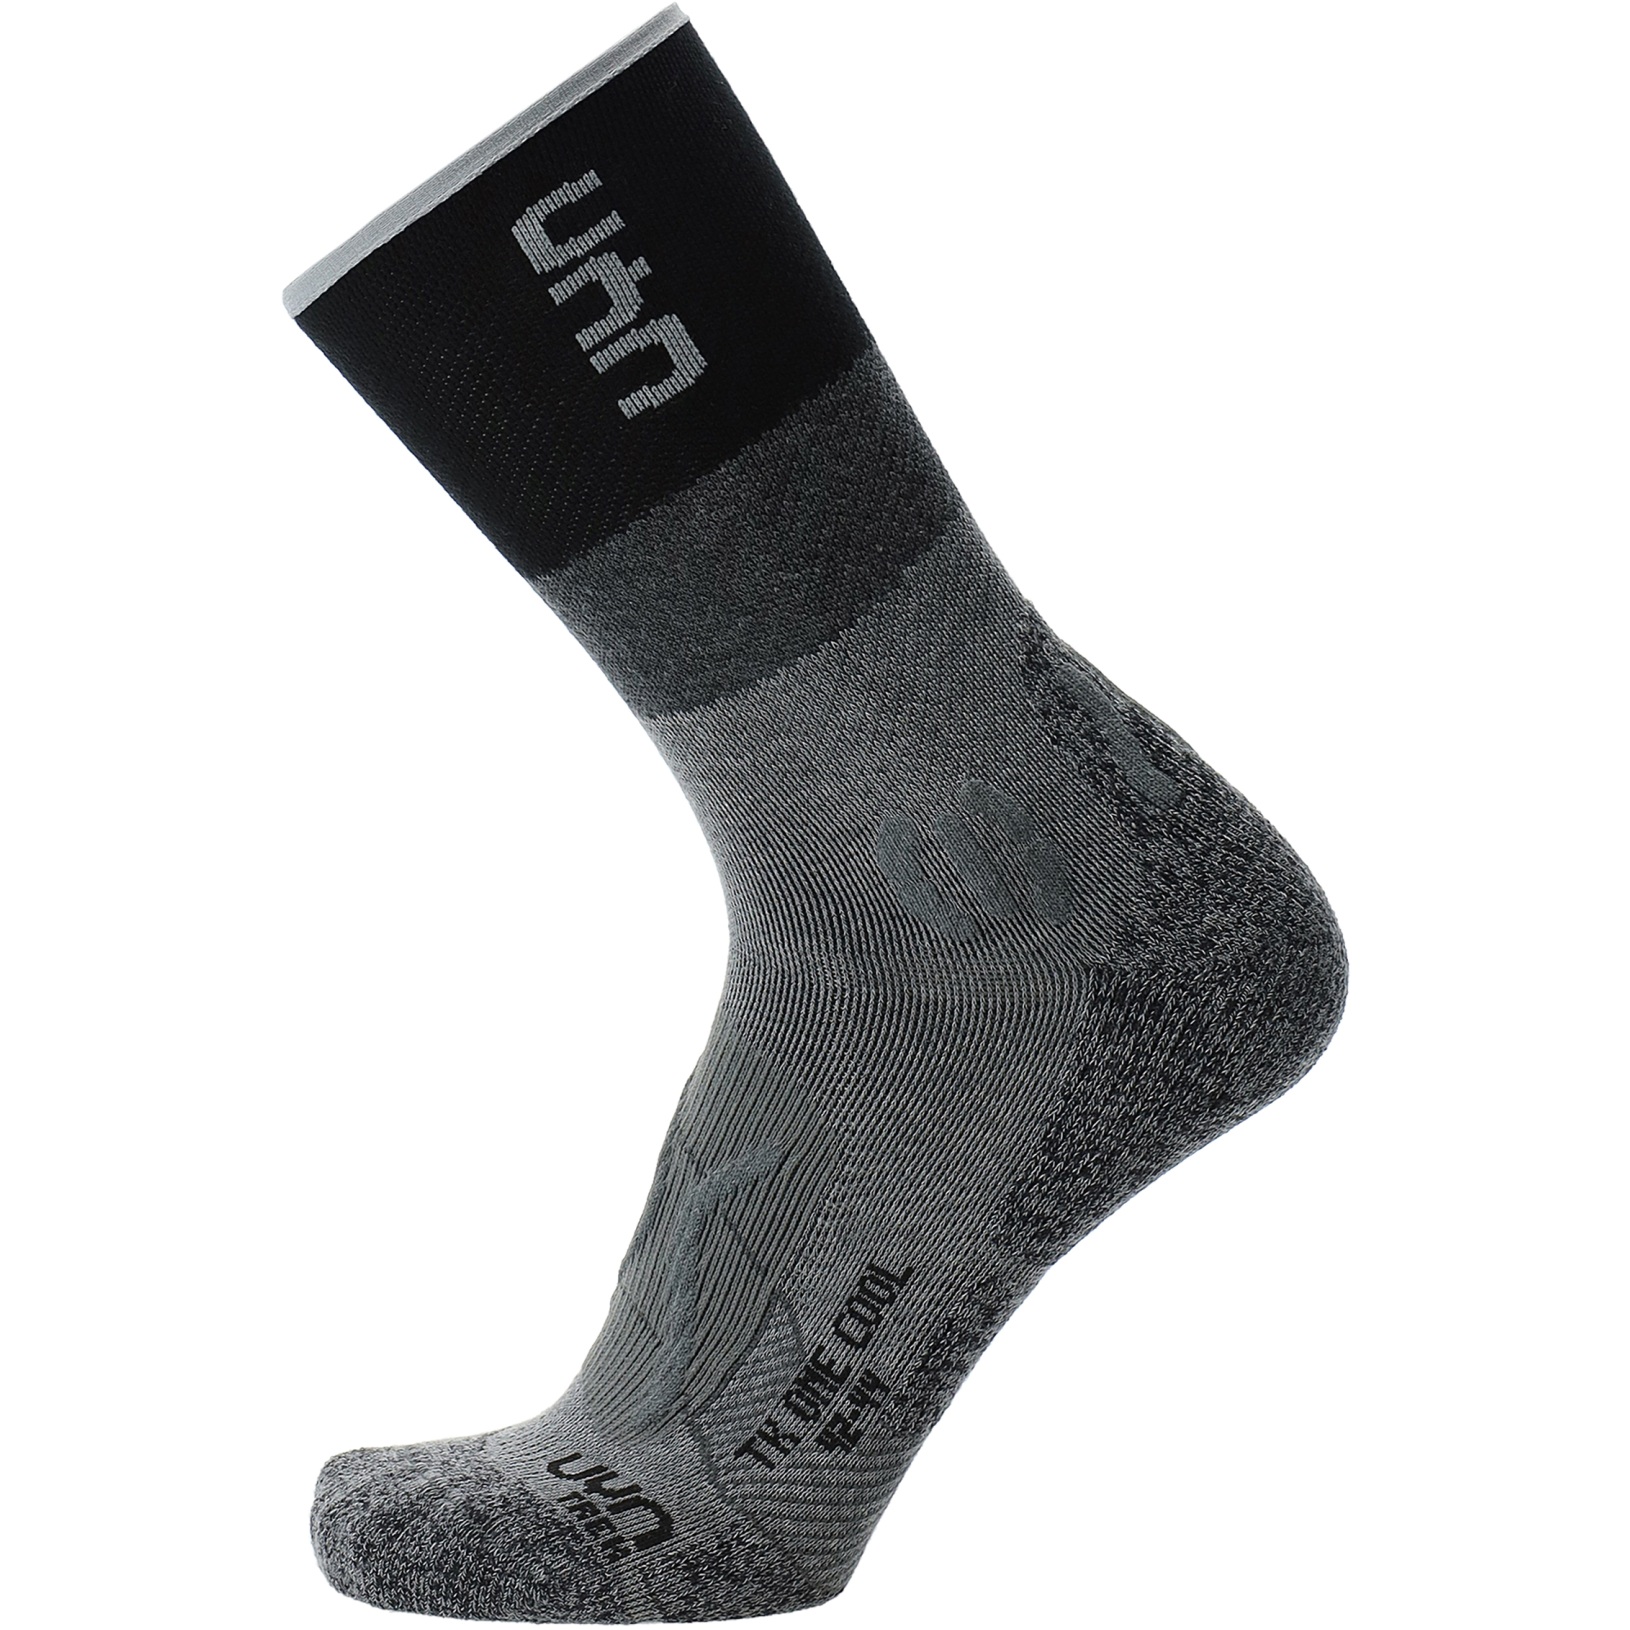 Produktbild von UYN Trekking One Cool Socken Damen - Grau/Schwarz